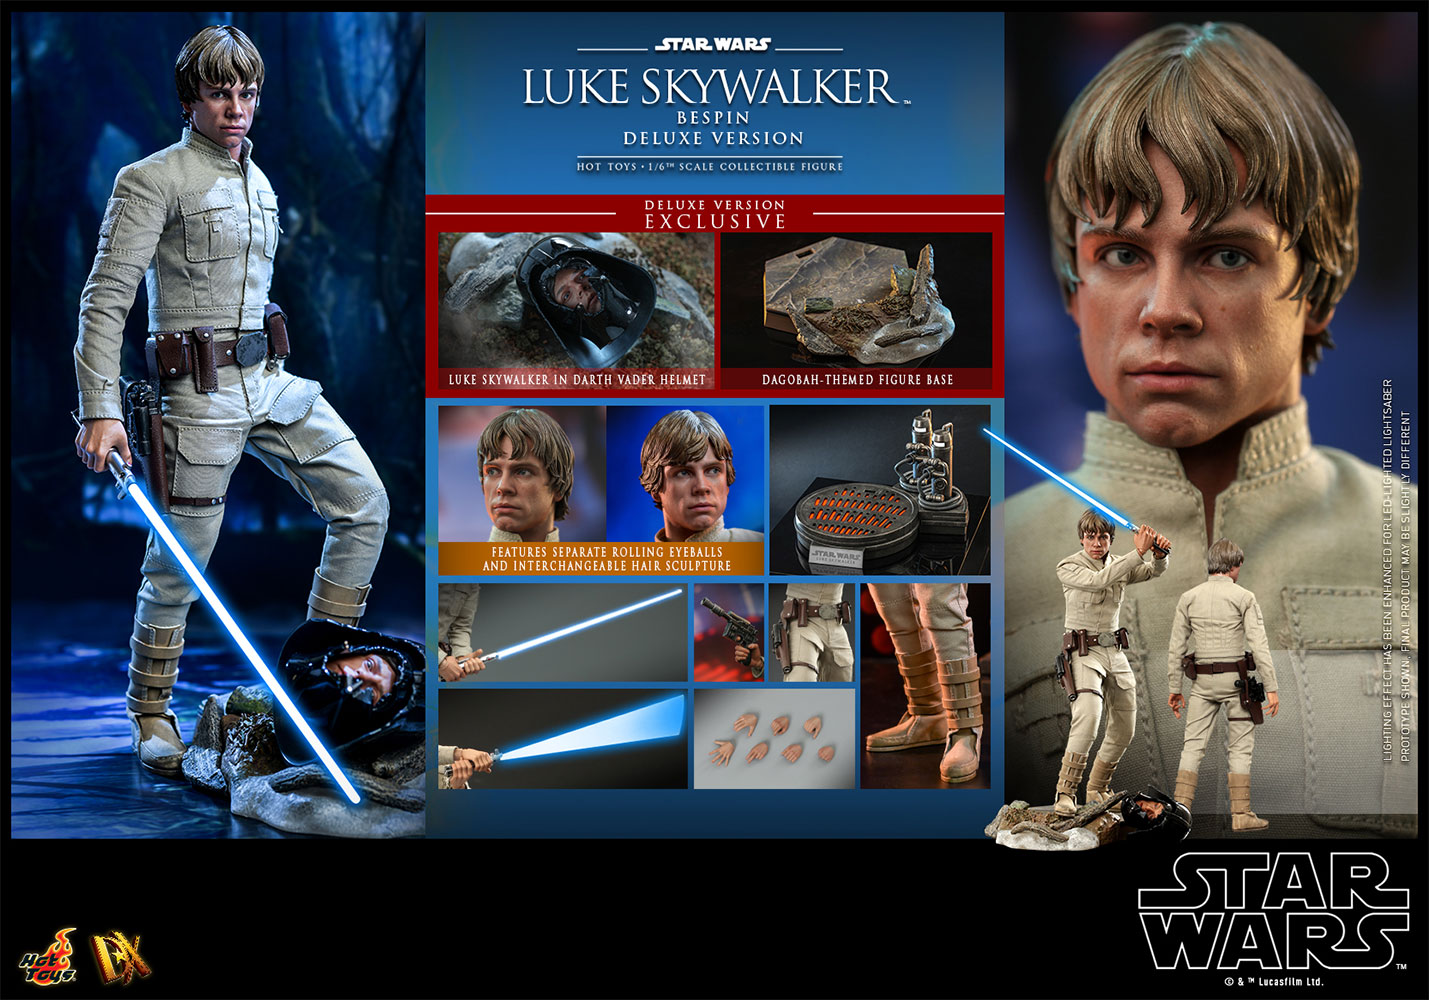 luke-skywalker-bespin-deluxe-version_star-wars_gallery_6256f8026e3f0.jpg